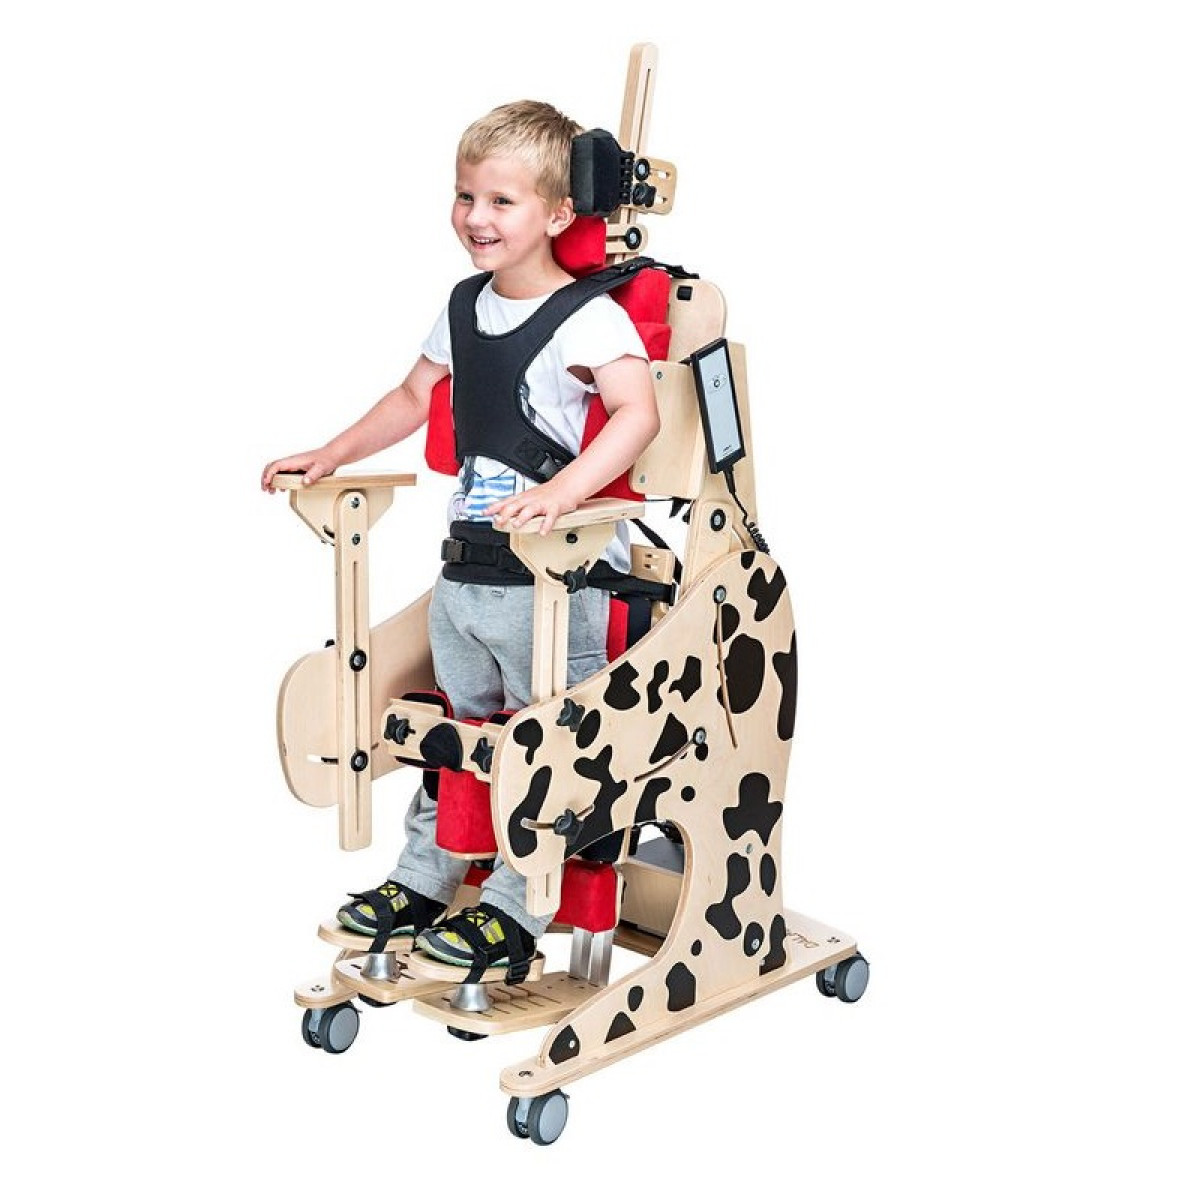 Сиденье для детей дцп. Вертикализатор Далматинчик. Реабилитационное кресло AKCESMED Зебра Инвенто. Вертикализатор для инвалидов детей ДЦП. Вертикализаторы заднеопорный для детей с ДЦП.